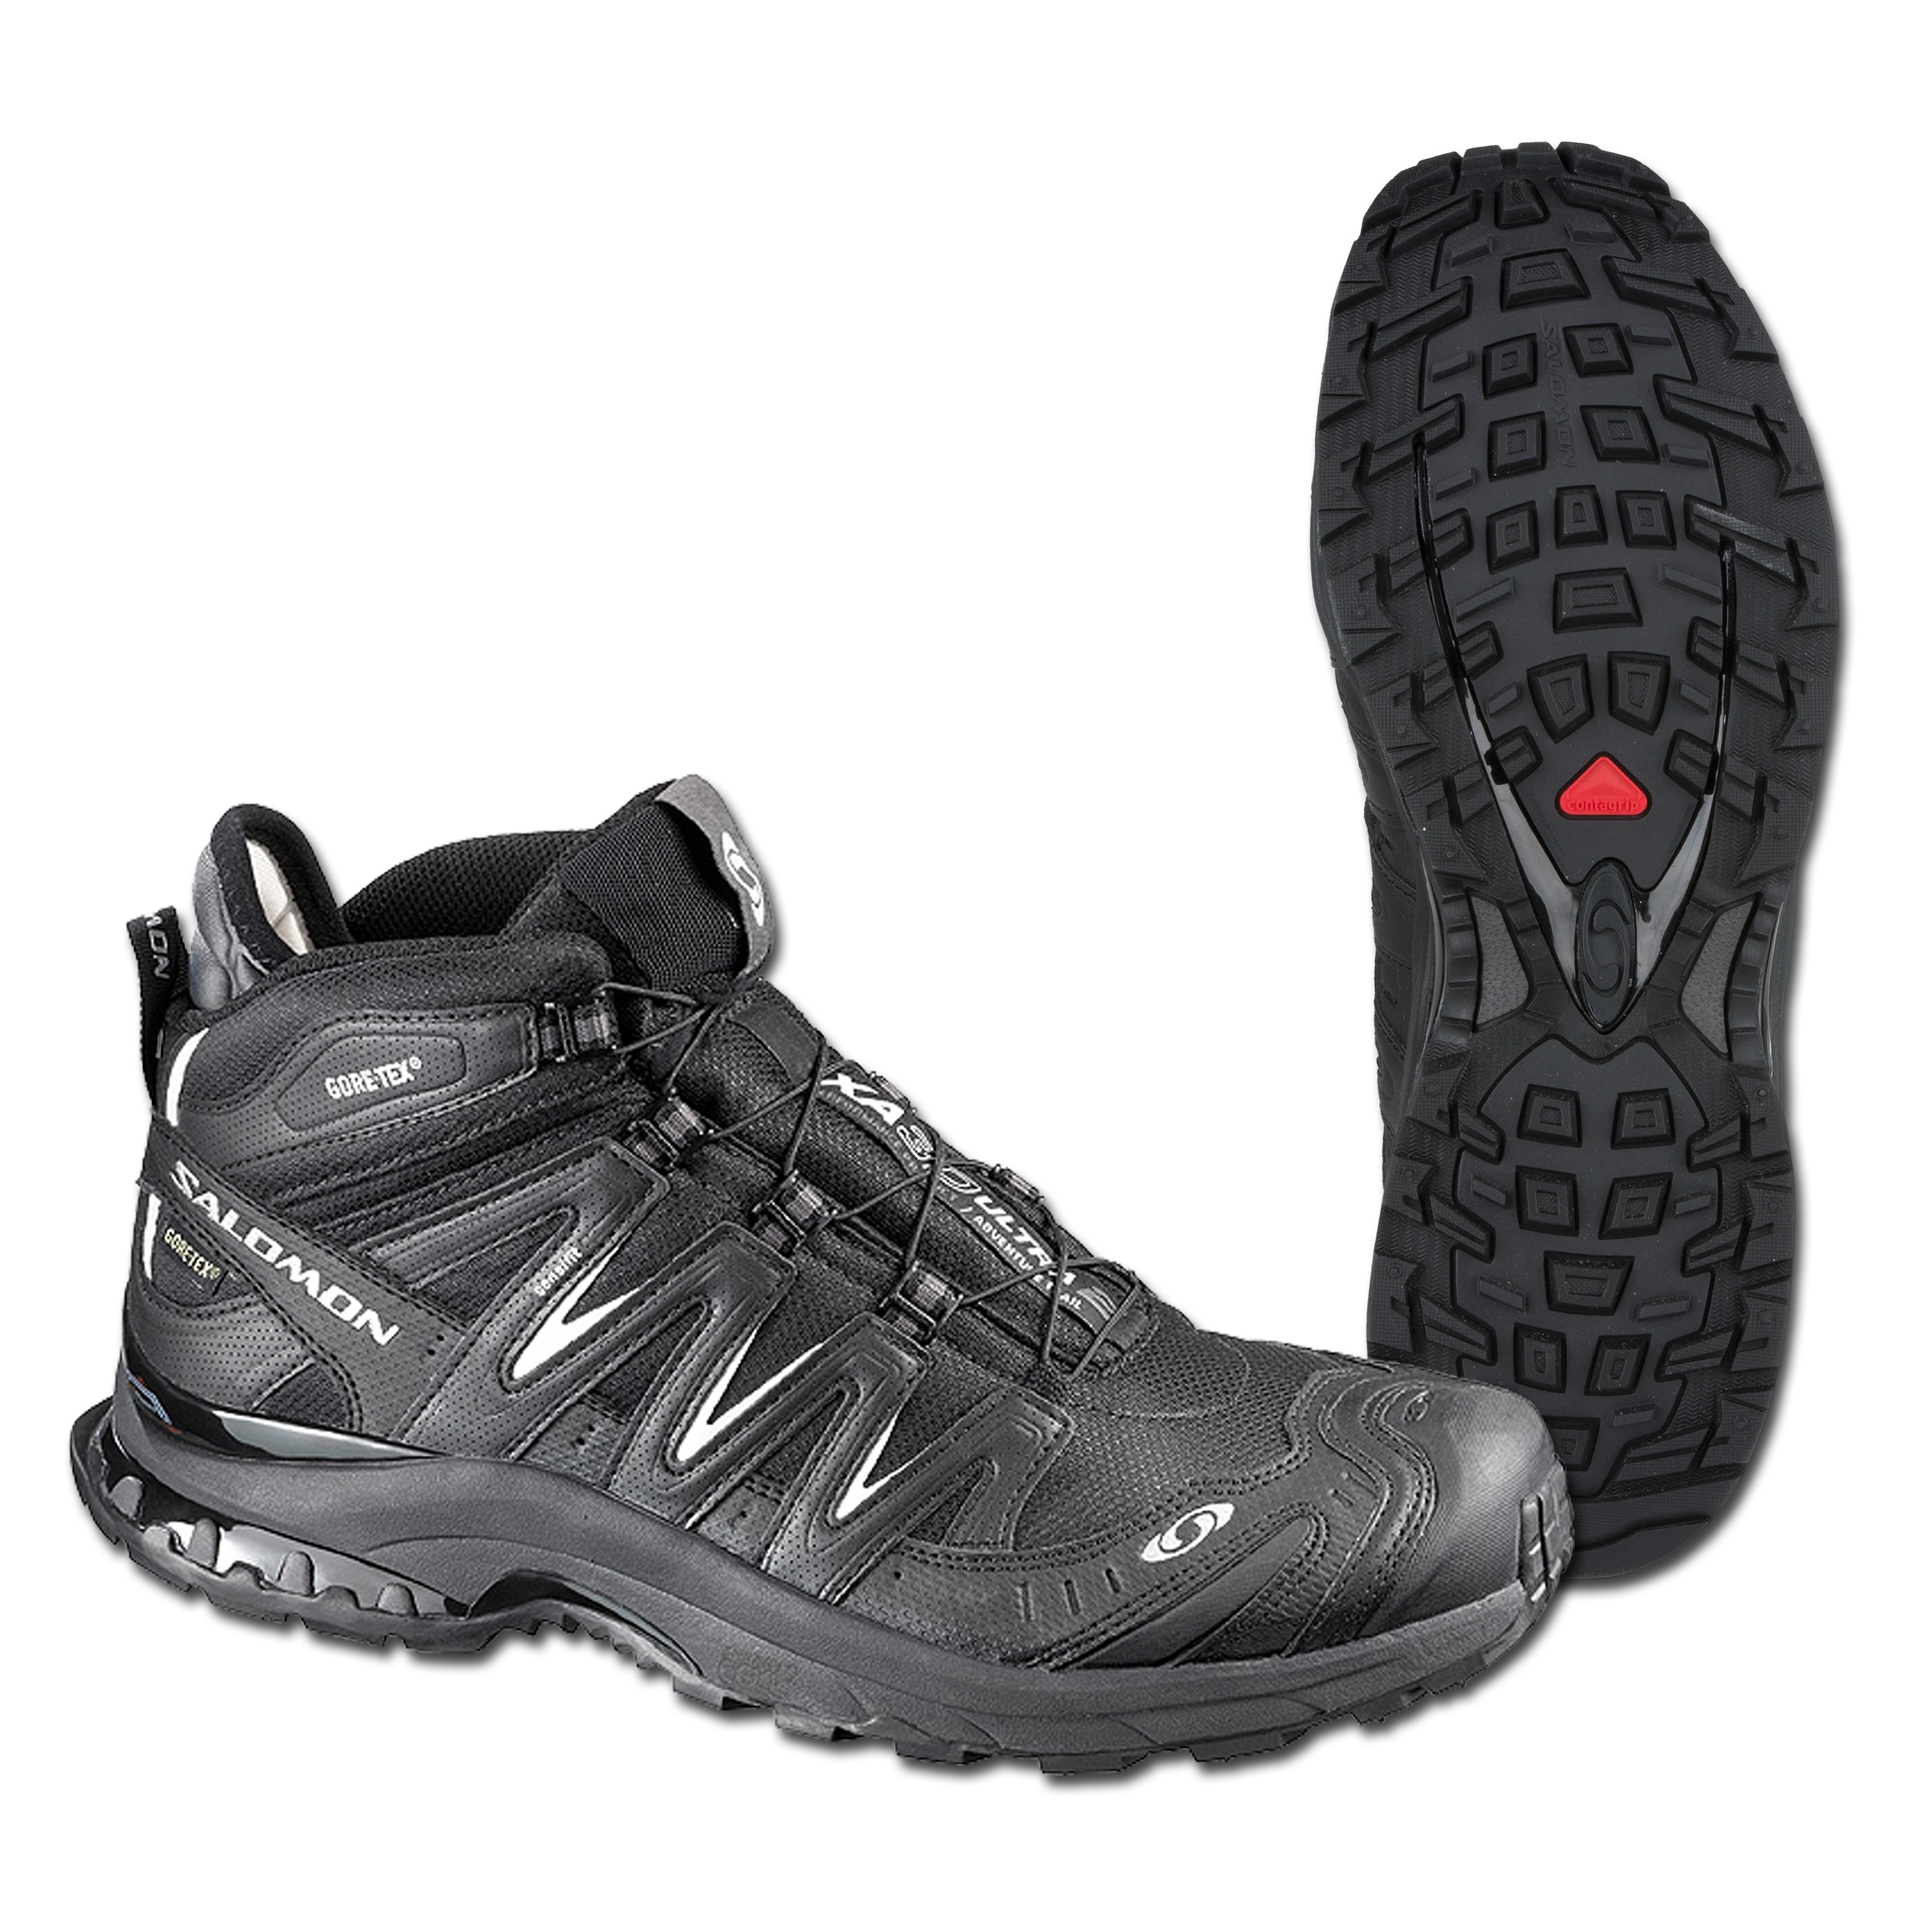 Salomon Shoes Pro 3D Mid LTR GTX black | Salomon Shoes XA Pro Mid LTR GTX black | Hiking Shoes | Shoes Footwear |